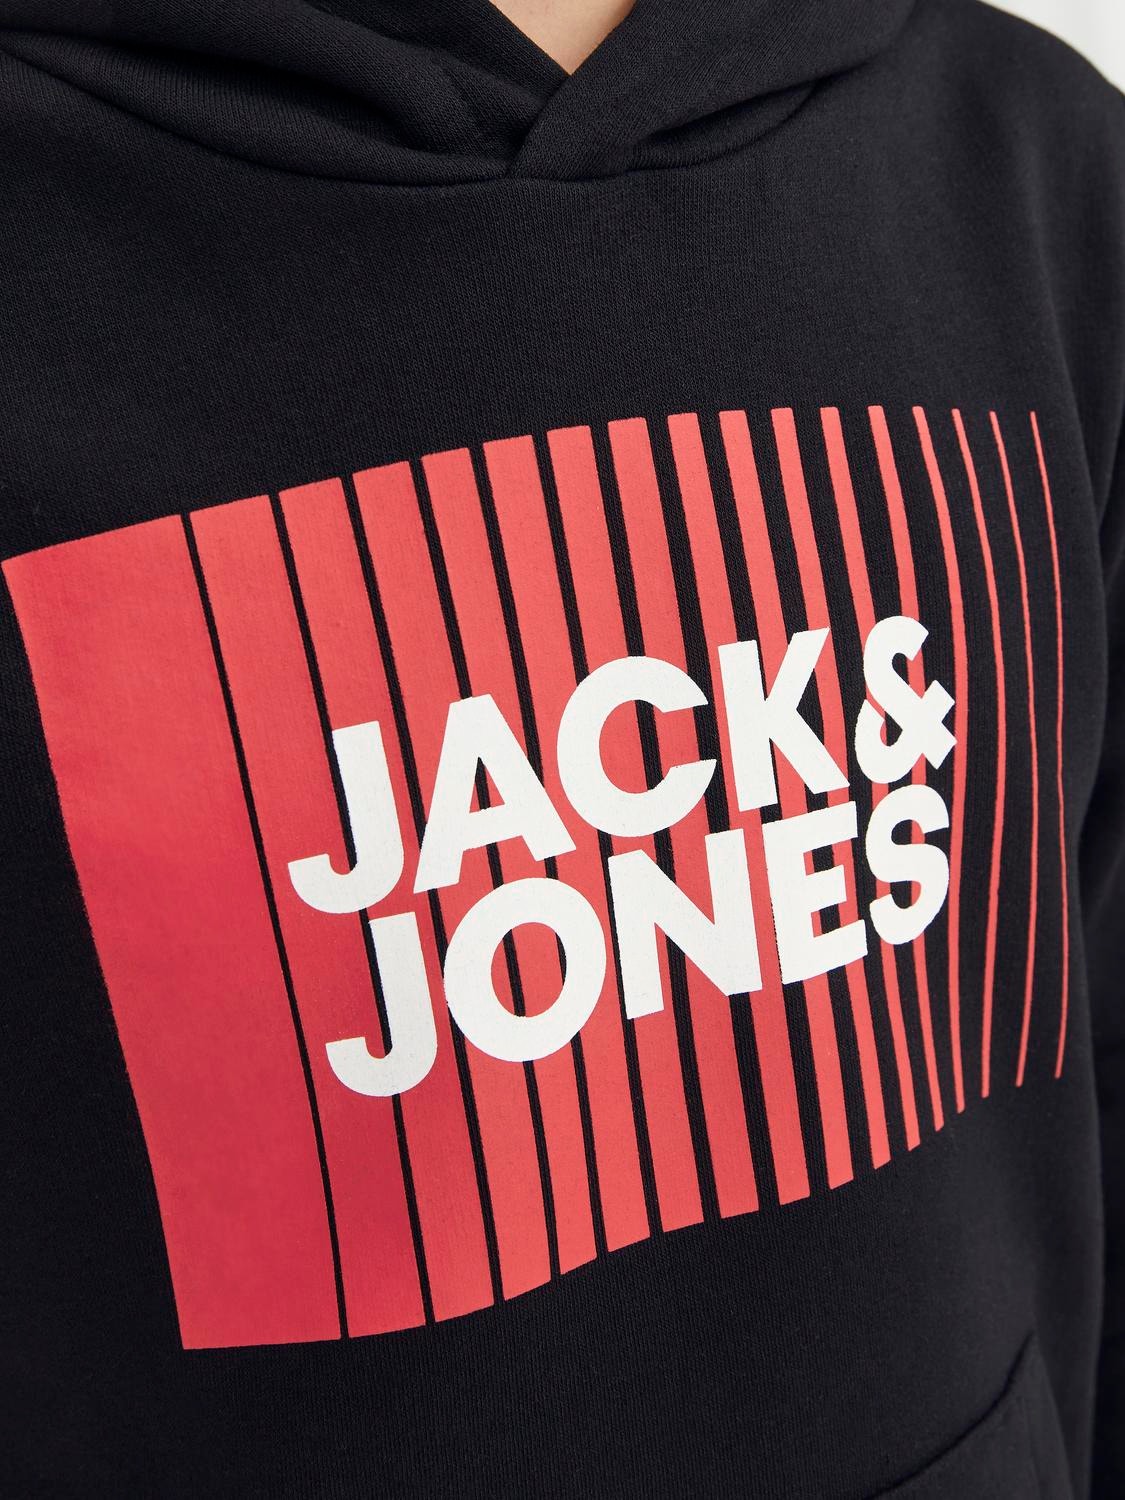 Jack & Jones Logo Kapuzenpullover Für jungs -Black - 12237459